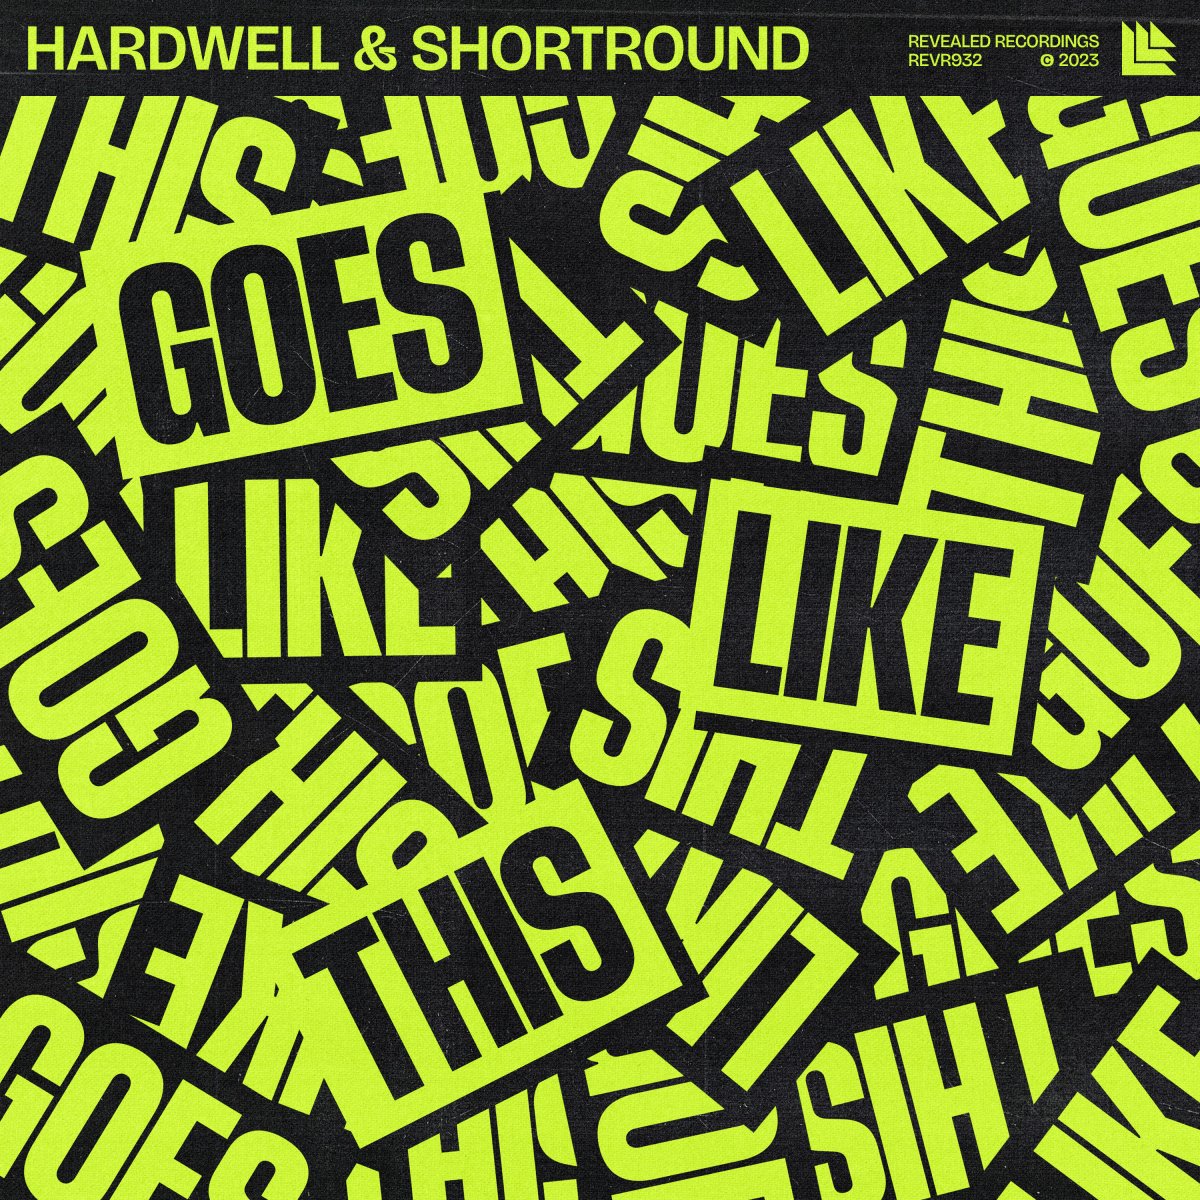 Goes Like This - Hardwell⁠ & ShortRound⁠ 